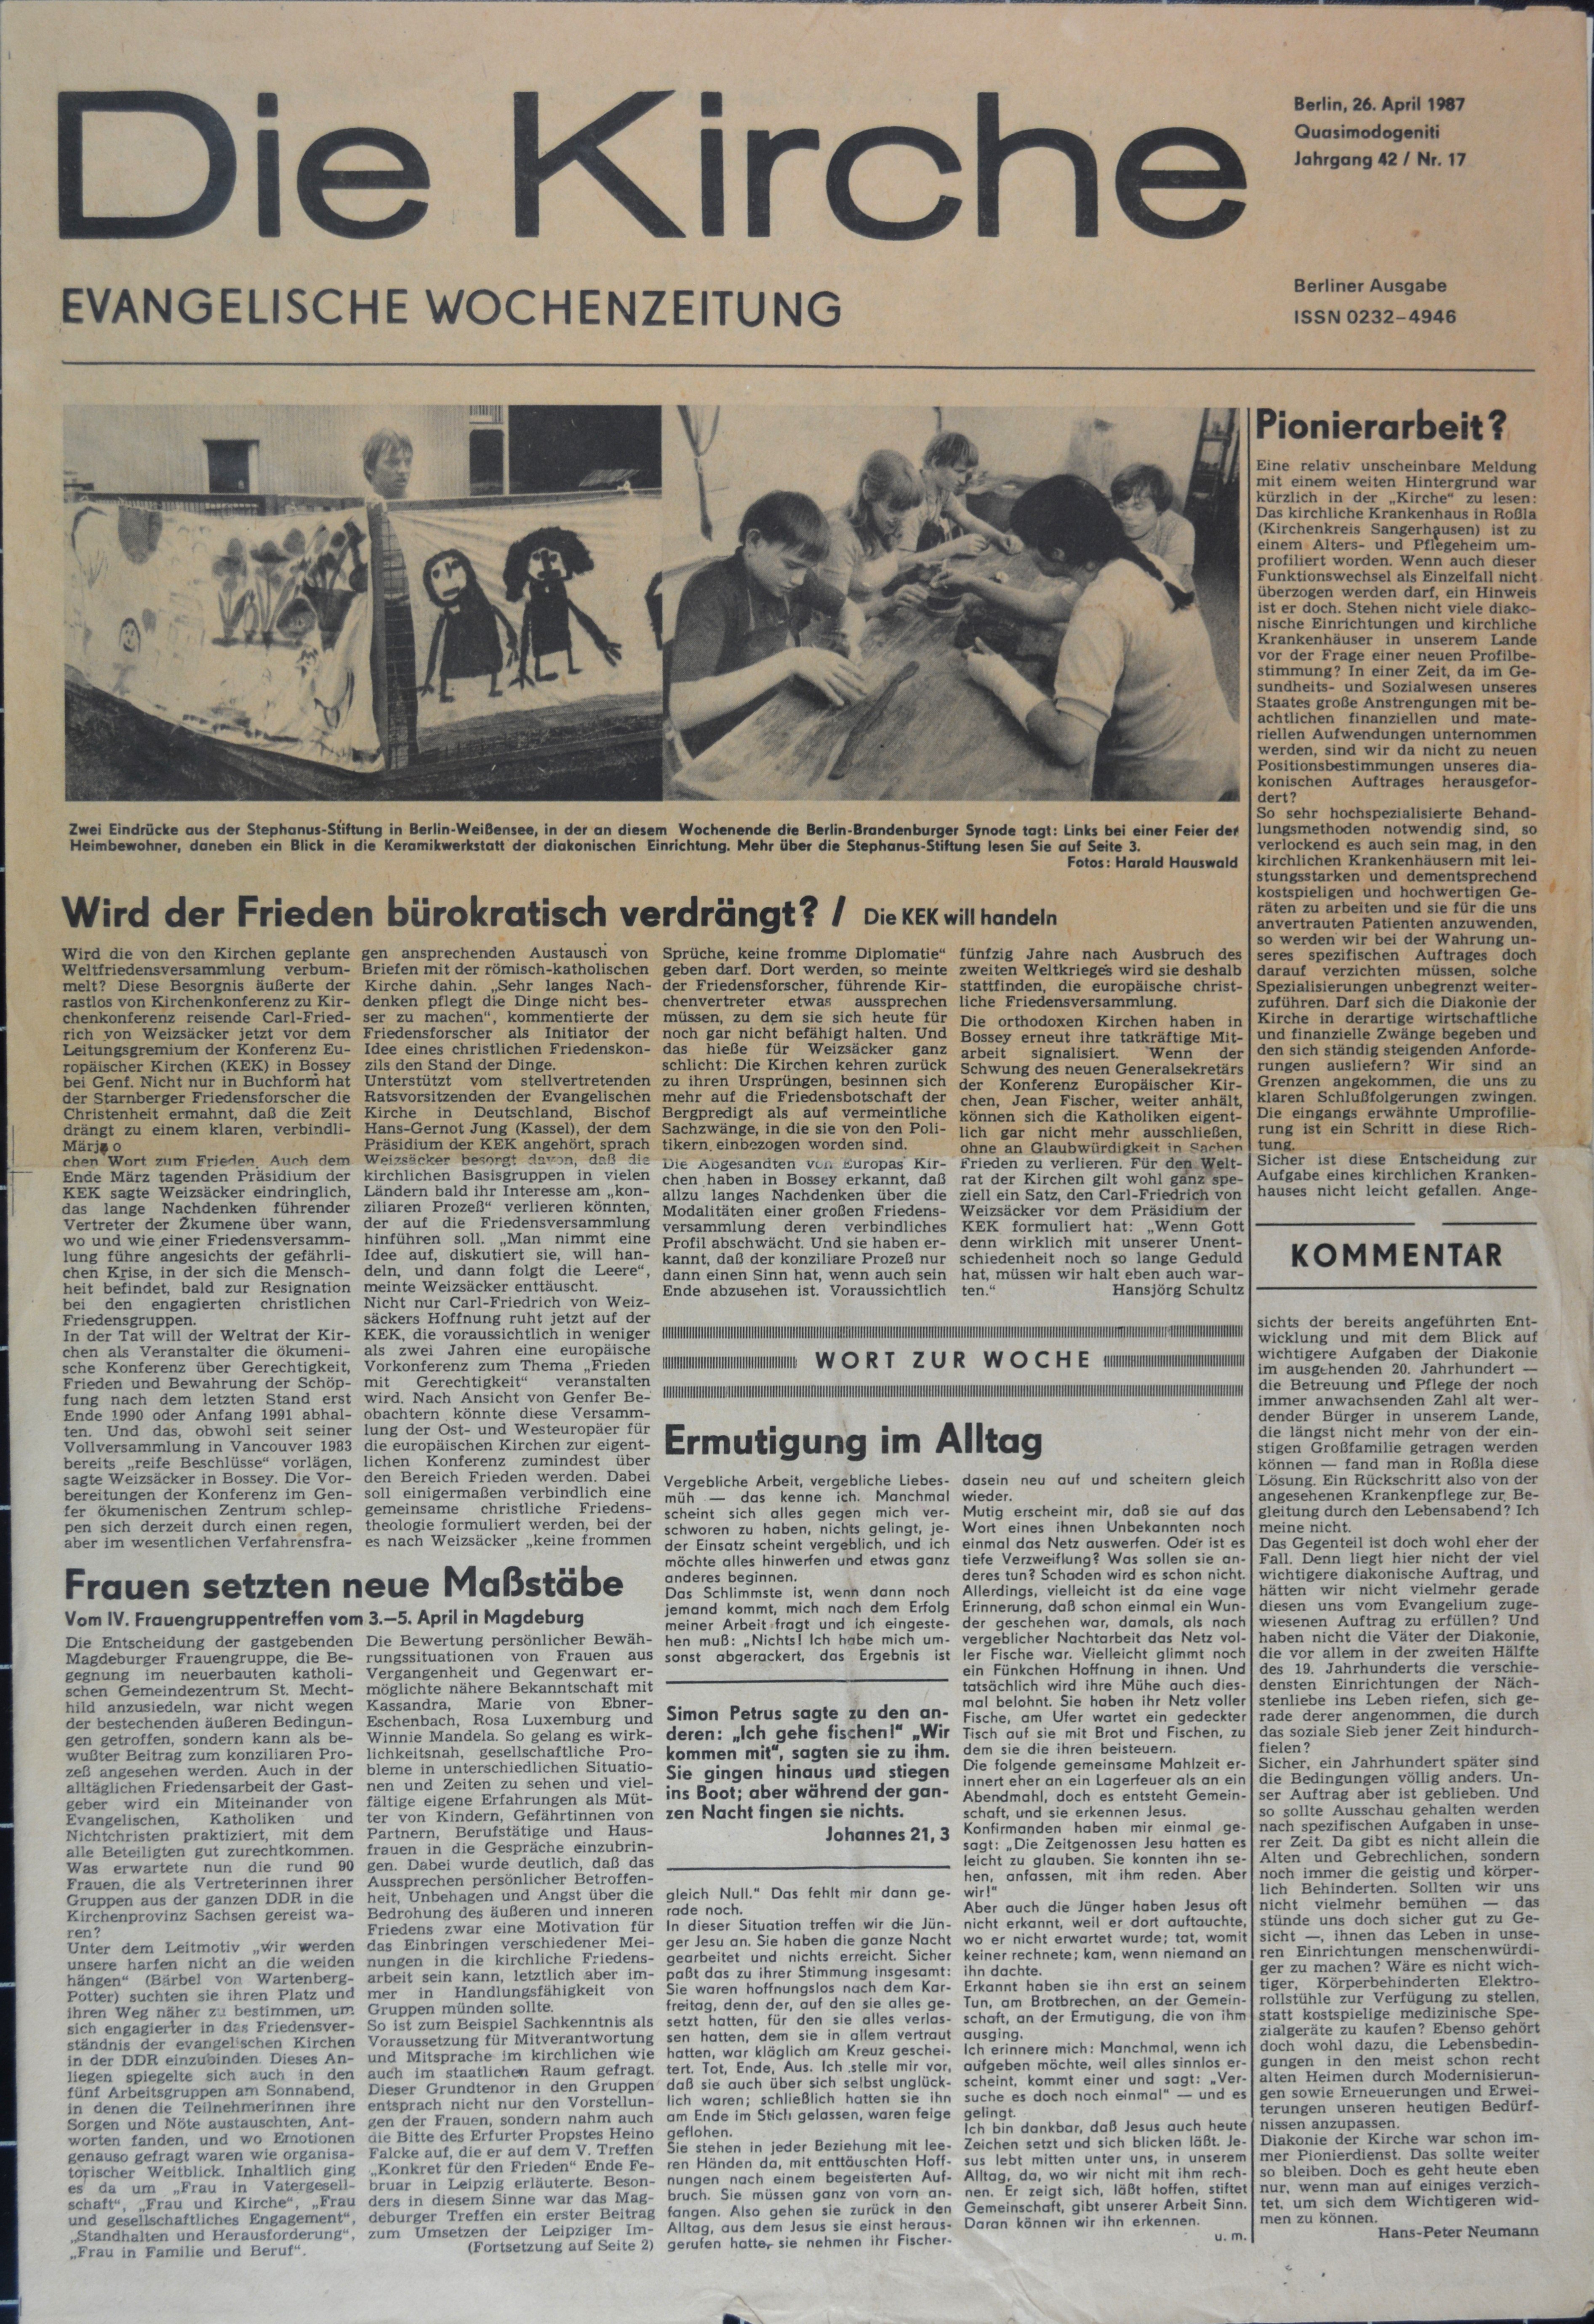 Zeitung: Die Kirche. Evangelische Wochenzeitung, 42. Jg., Nr. 17 (26. April 1987) (DDR Geschichtsmuseum im Dokumentationszentrum Perleberg CC BY-SA)